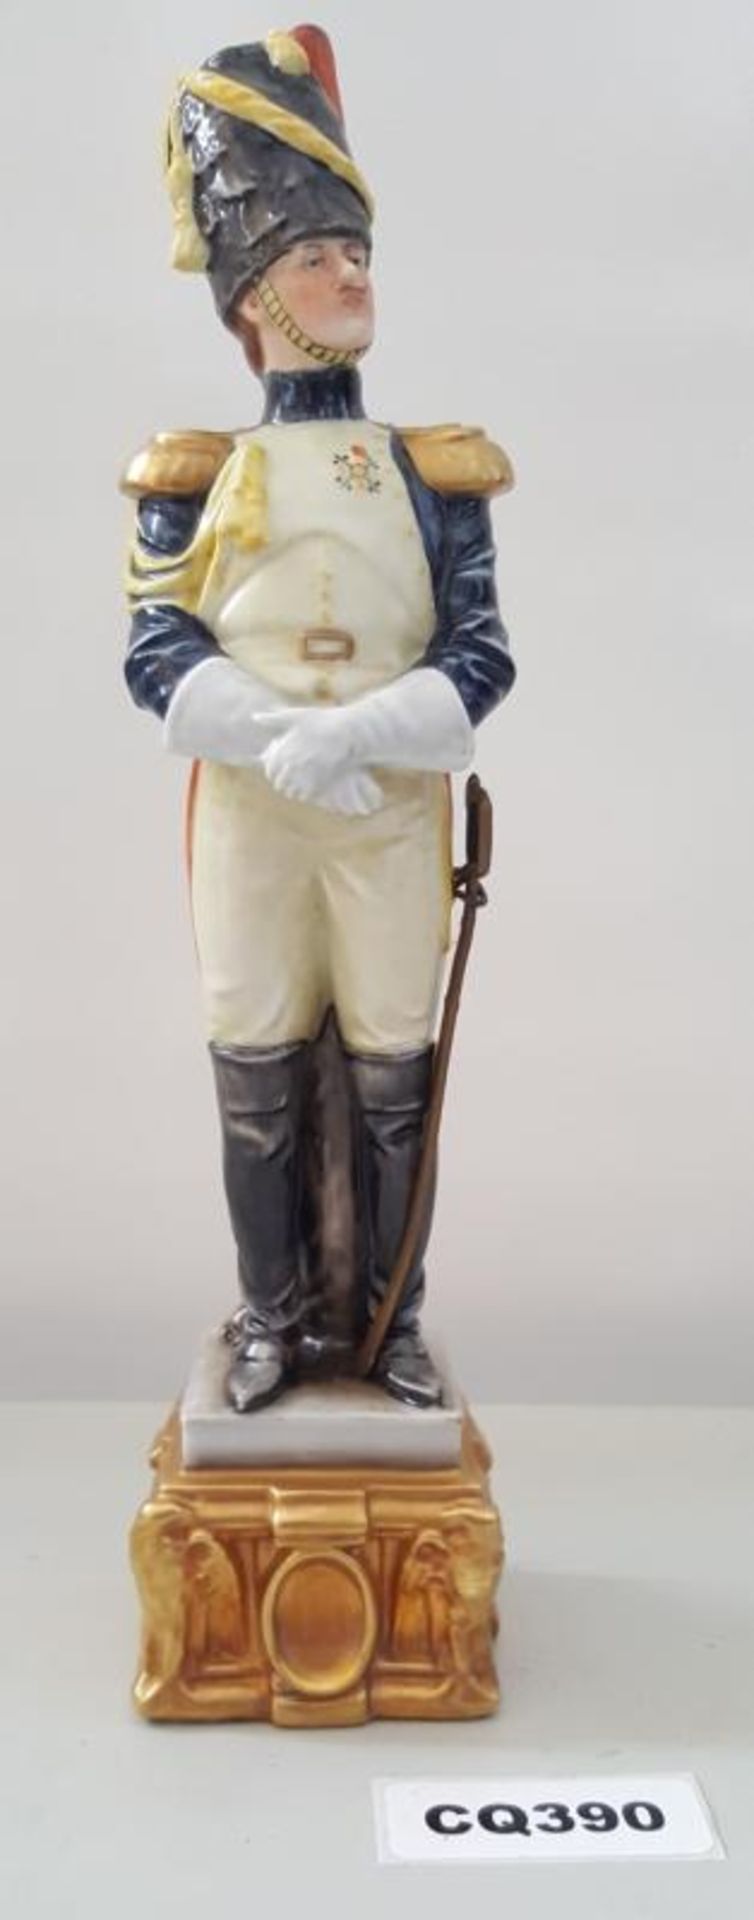 1 x Rare Italian Capodimonte Porcelain Bruno Merli Soldiers Figurines - Ref CQ390 E